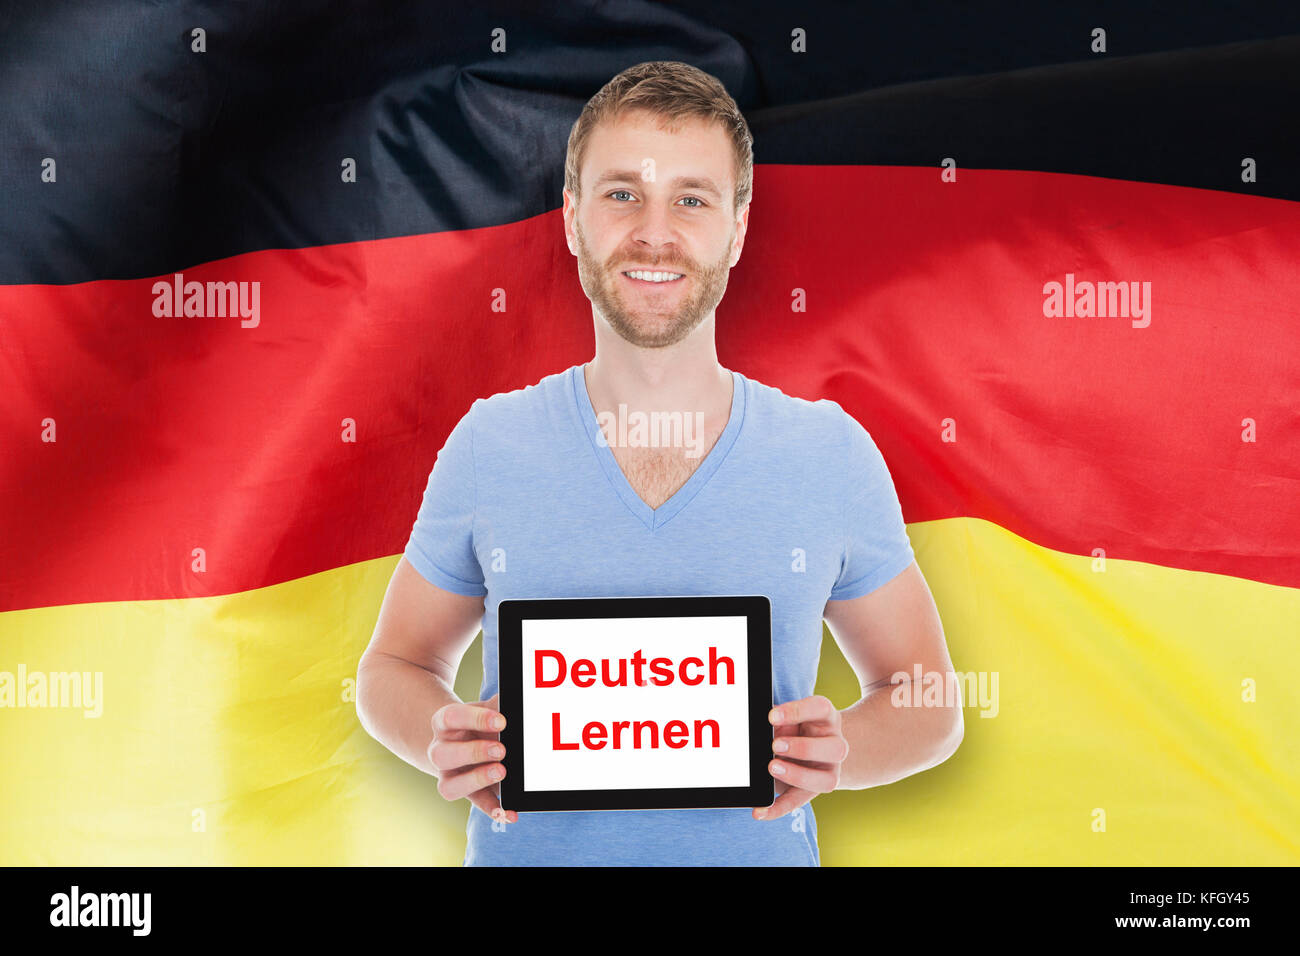 Jeune homme en face de l'Allemagne flag holding digital tablet avec apprendre texte allemand Banque D'Images